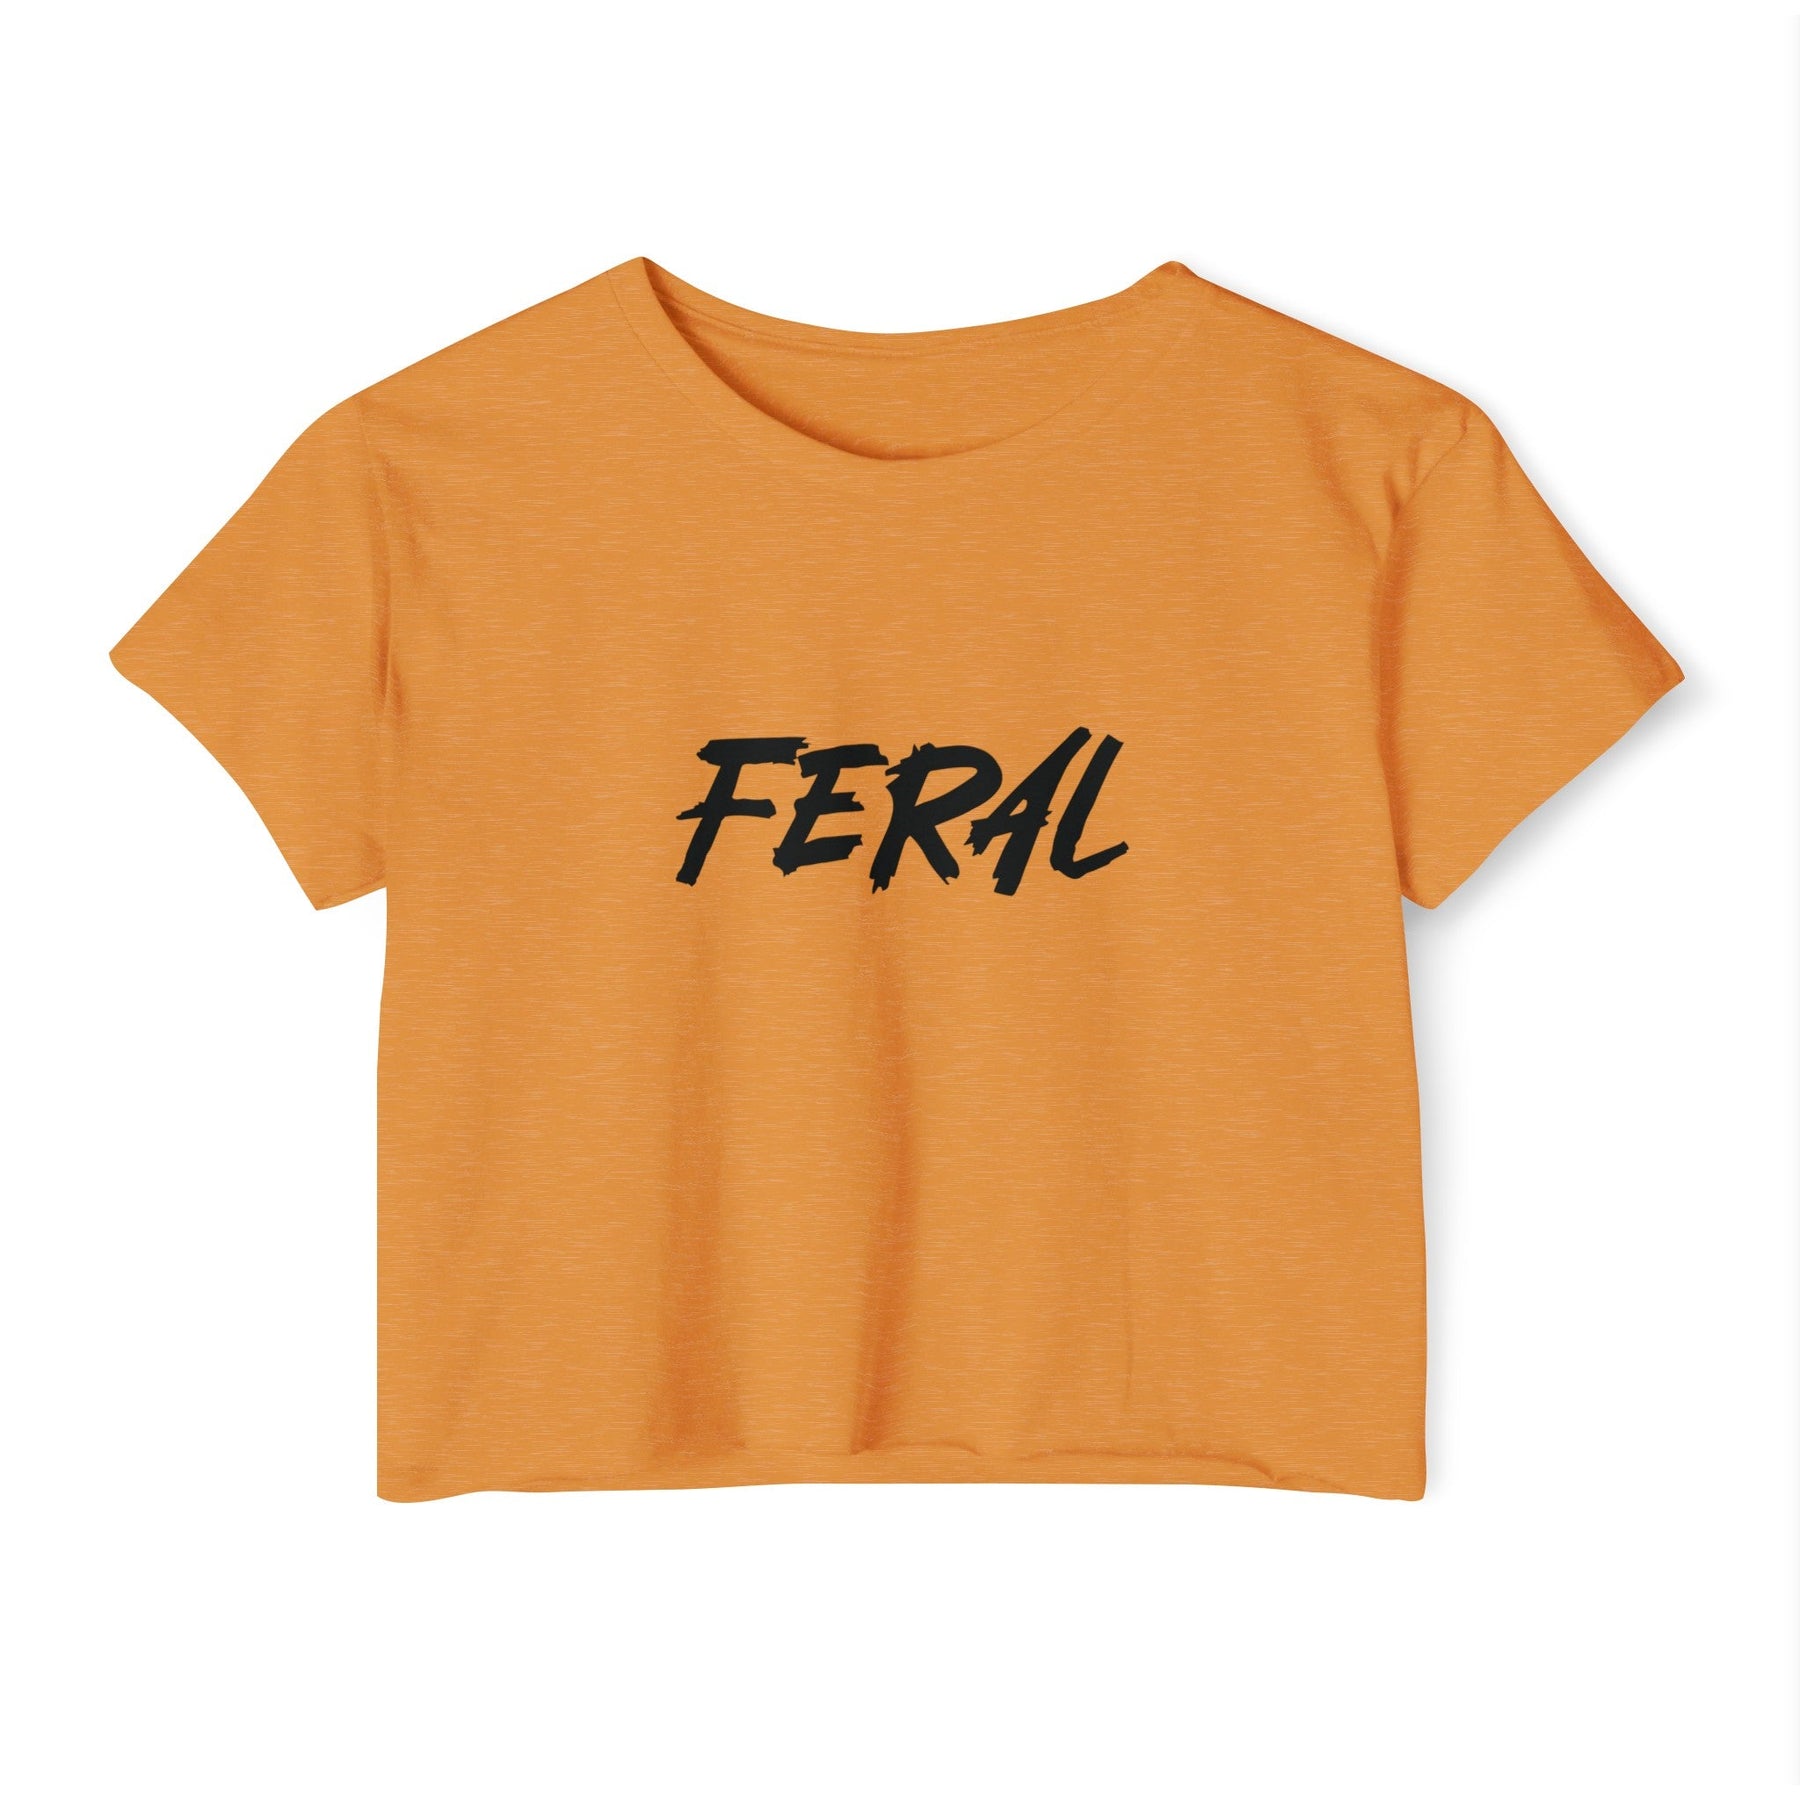 FERAL Women's Lightweight Crop Top - Goth Cloth Co.T - Shirt21782454563930144636